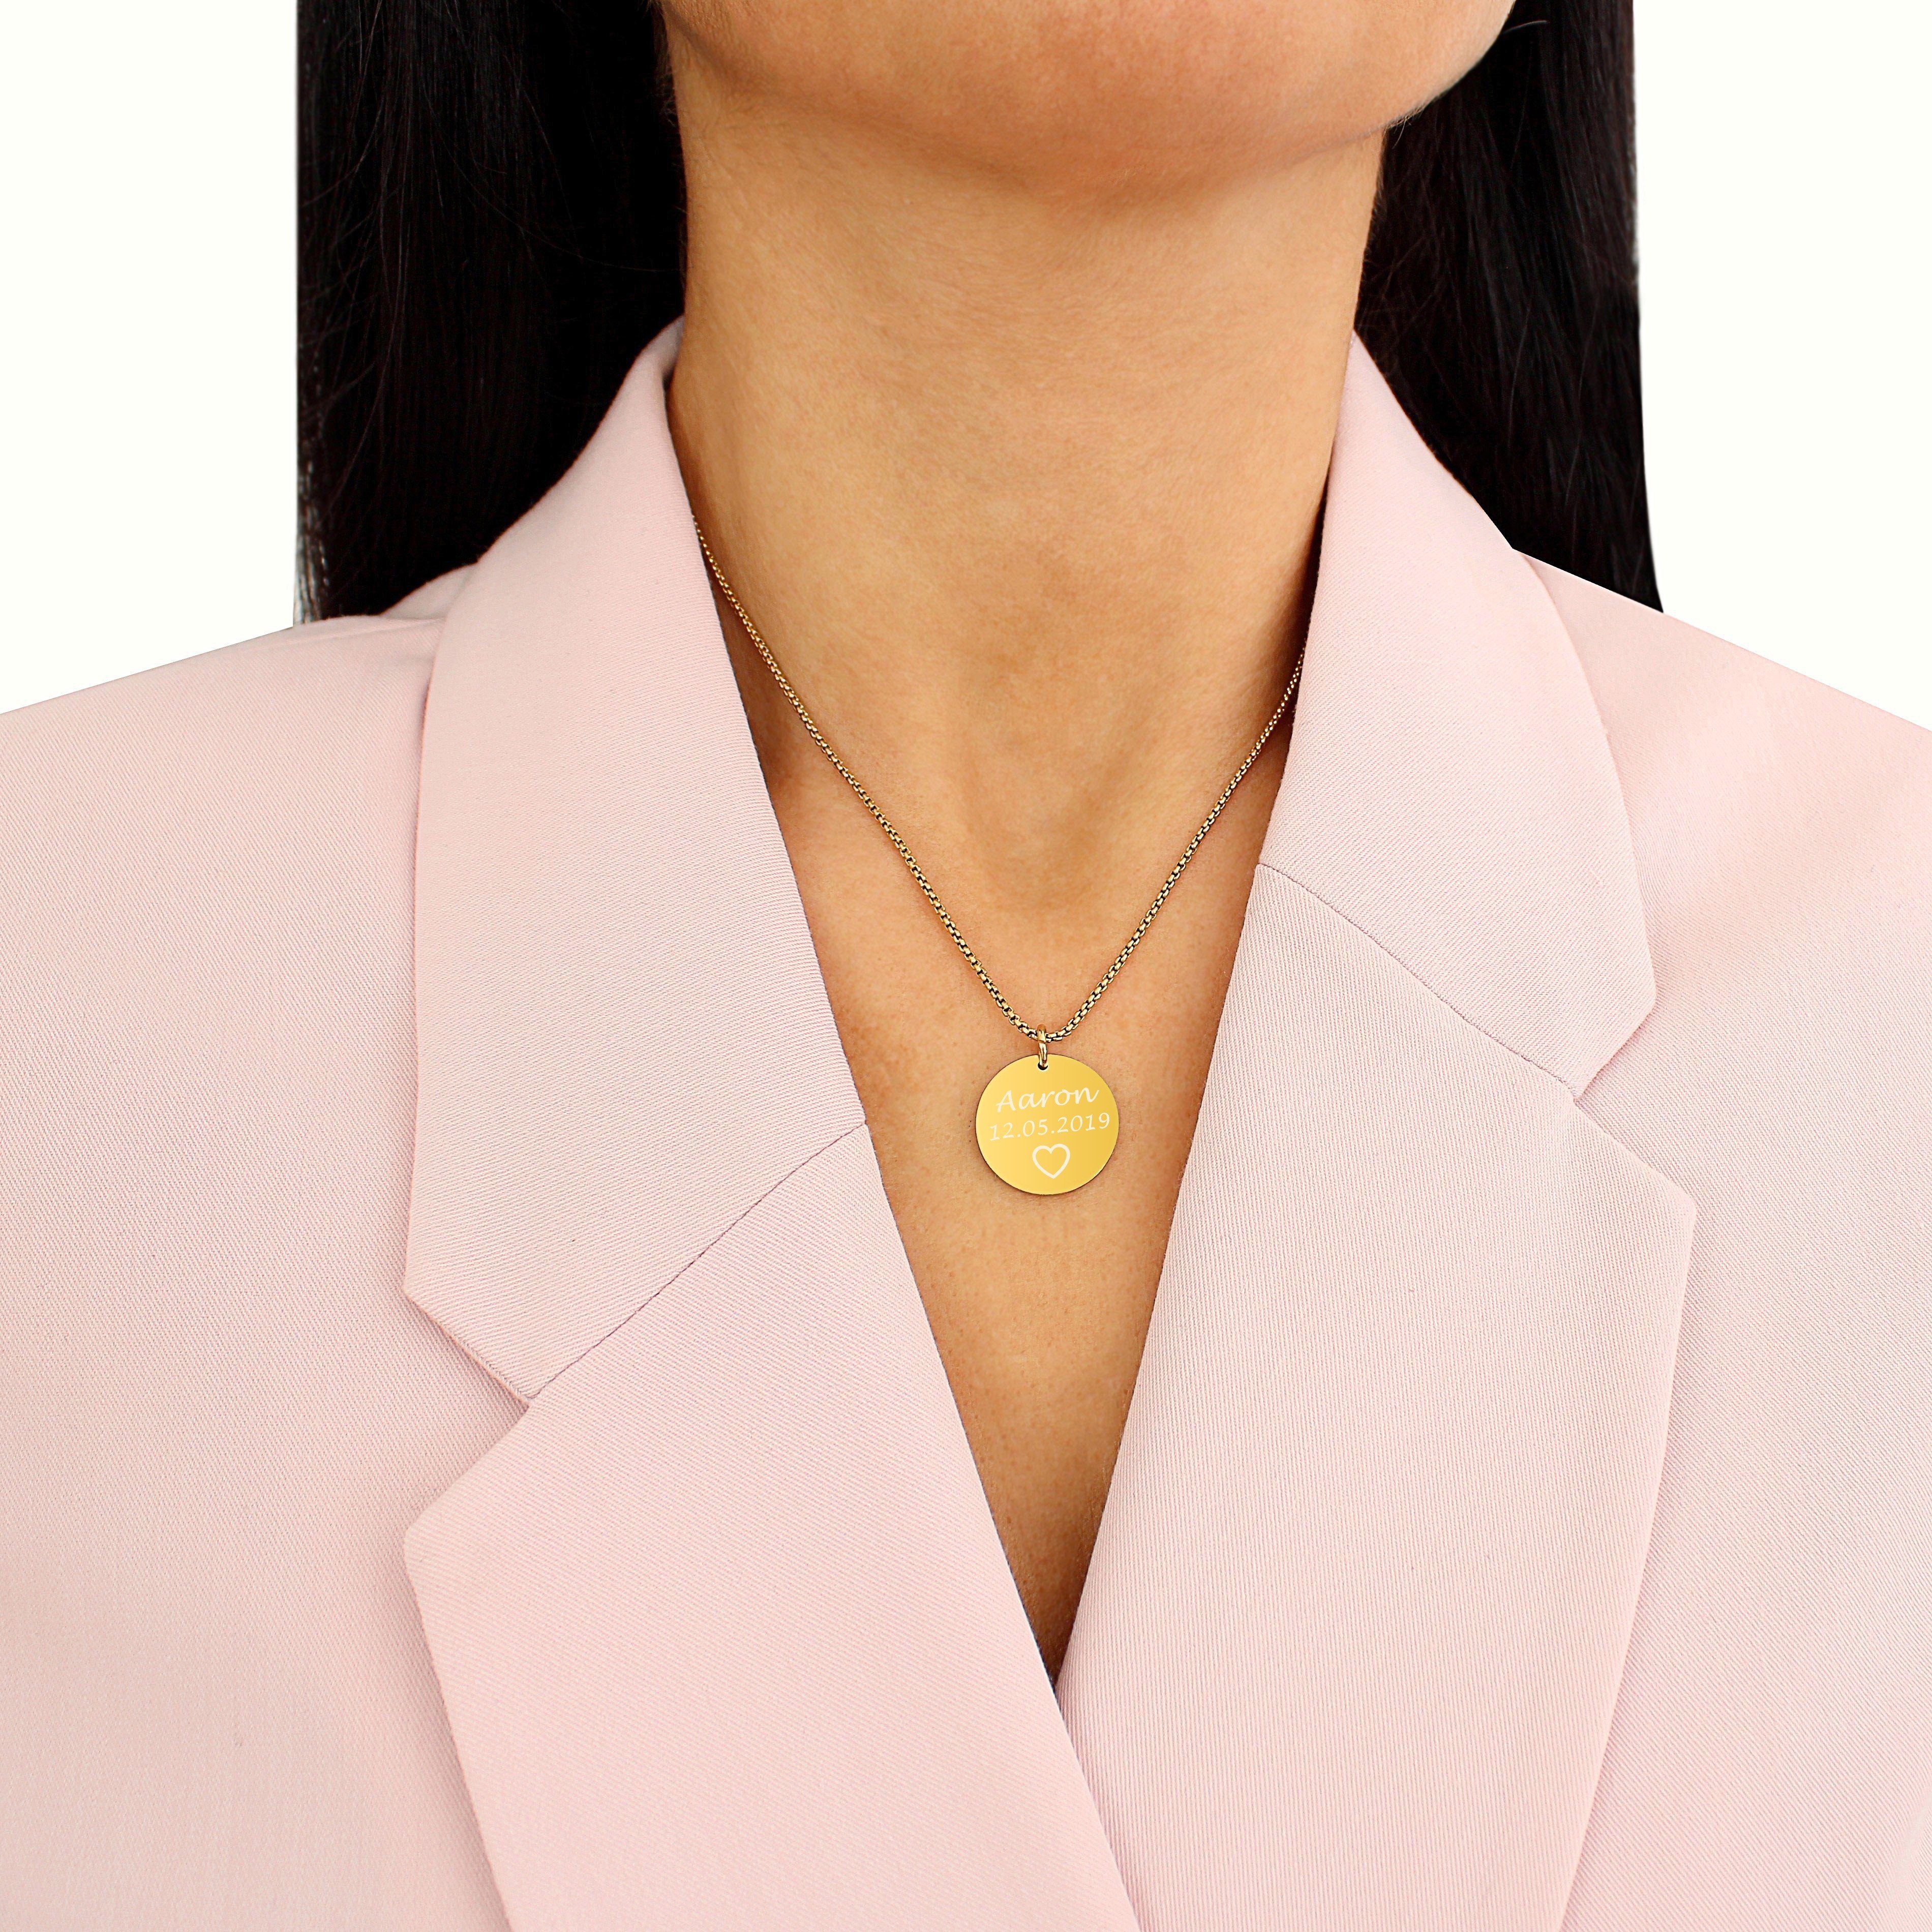 (Plättchen Halskette & Personalisierte Namen, Gravur Timando Anhänger, Geschenk mit Frauen, silber gold, Kette mit für sie) Namenskette mit Gravur Kette